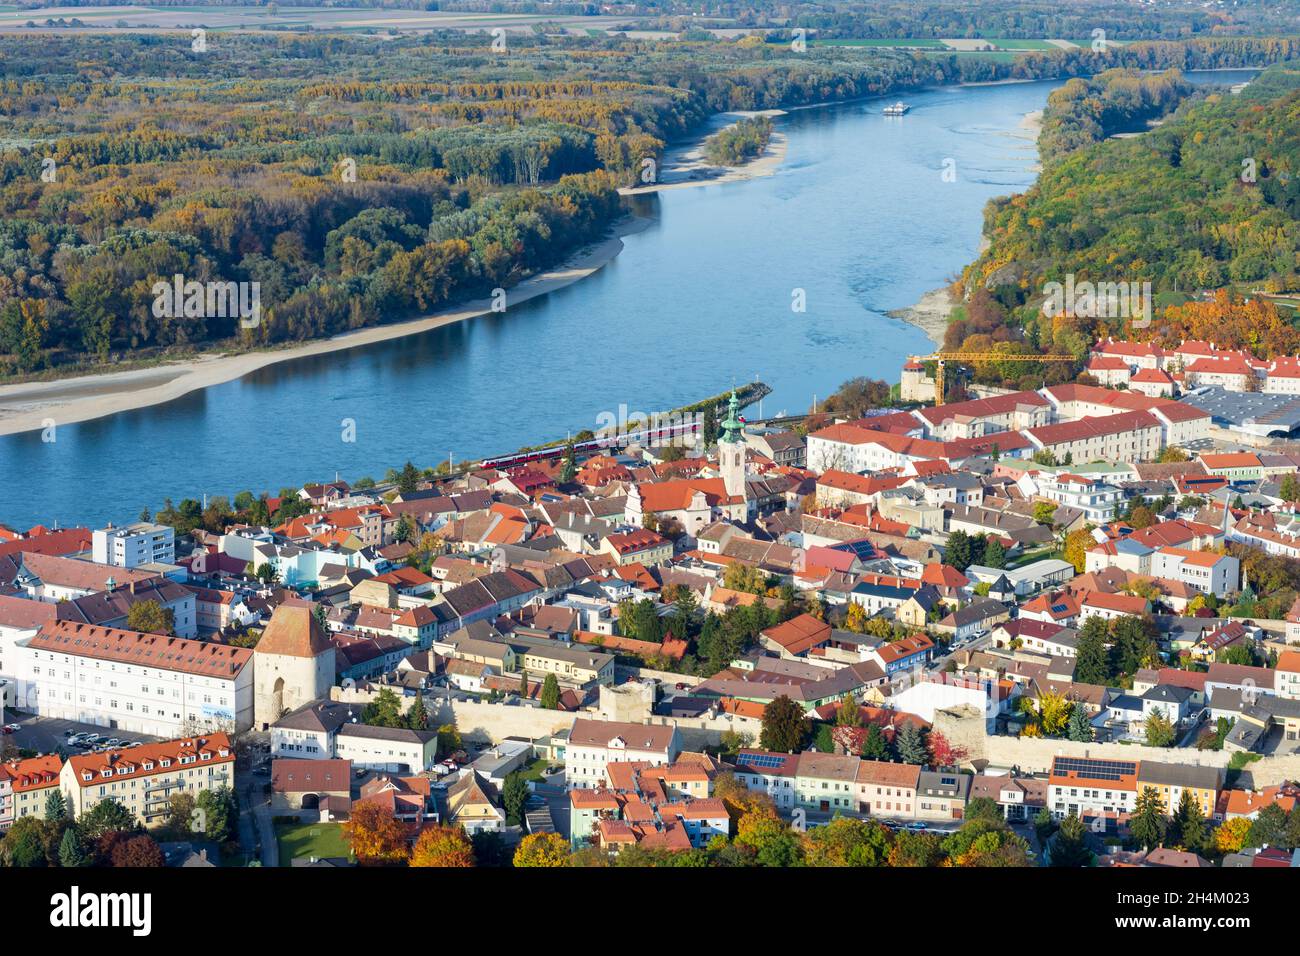 Hainburg an der Donau: old town of Hainburg, river Donau (Danube) in Donau, Niederösterreich, Lower Austria, Austria Stock Photo